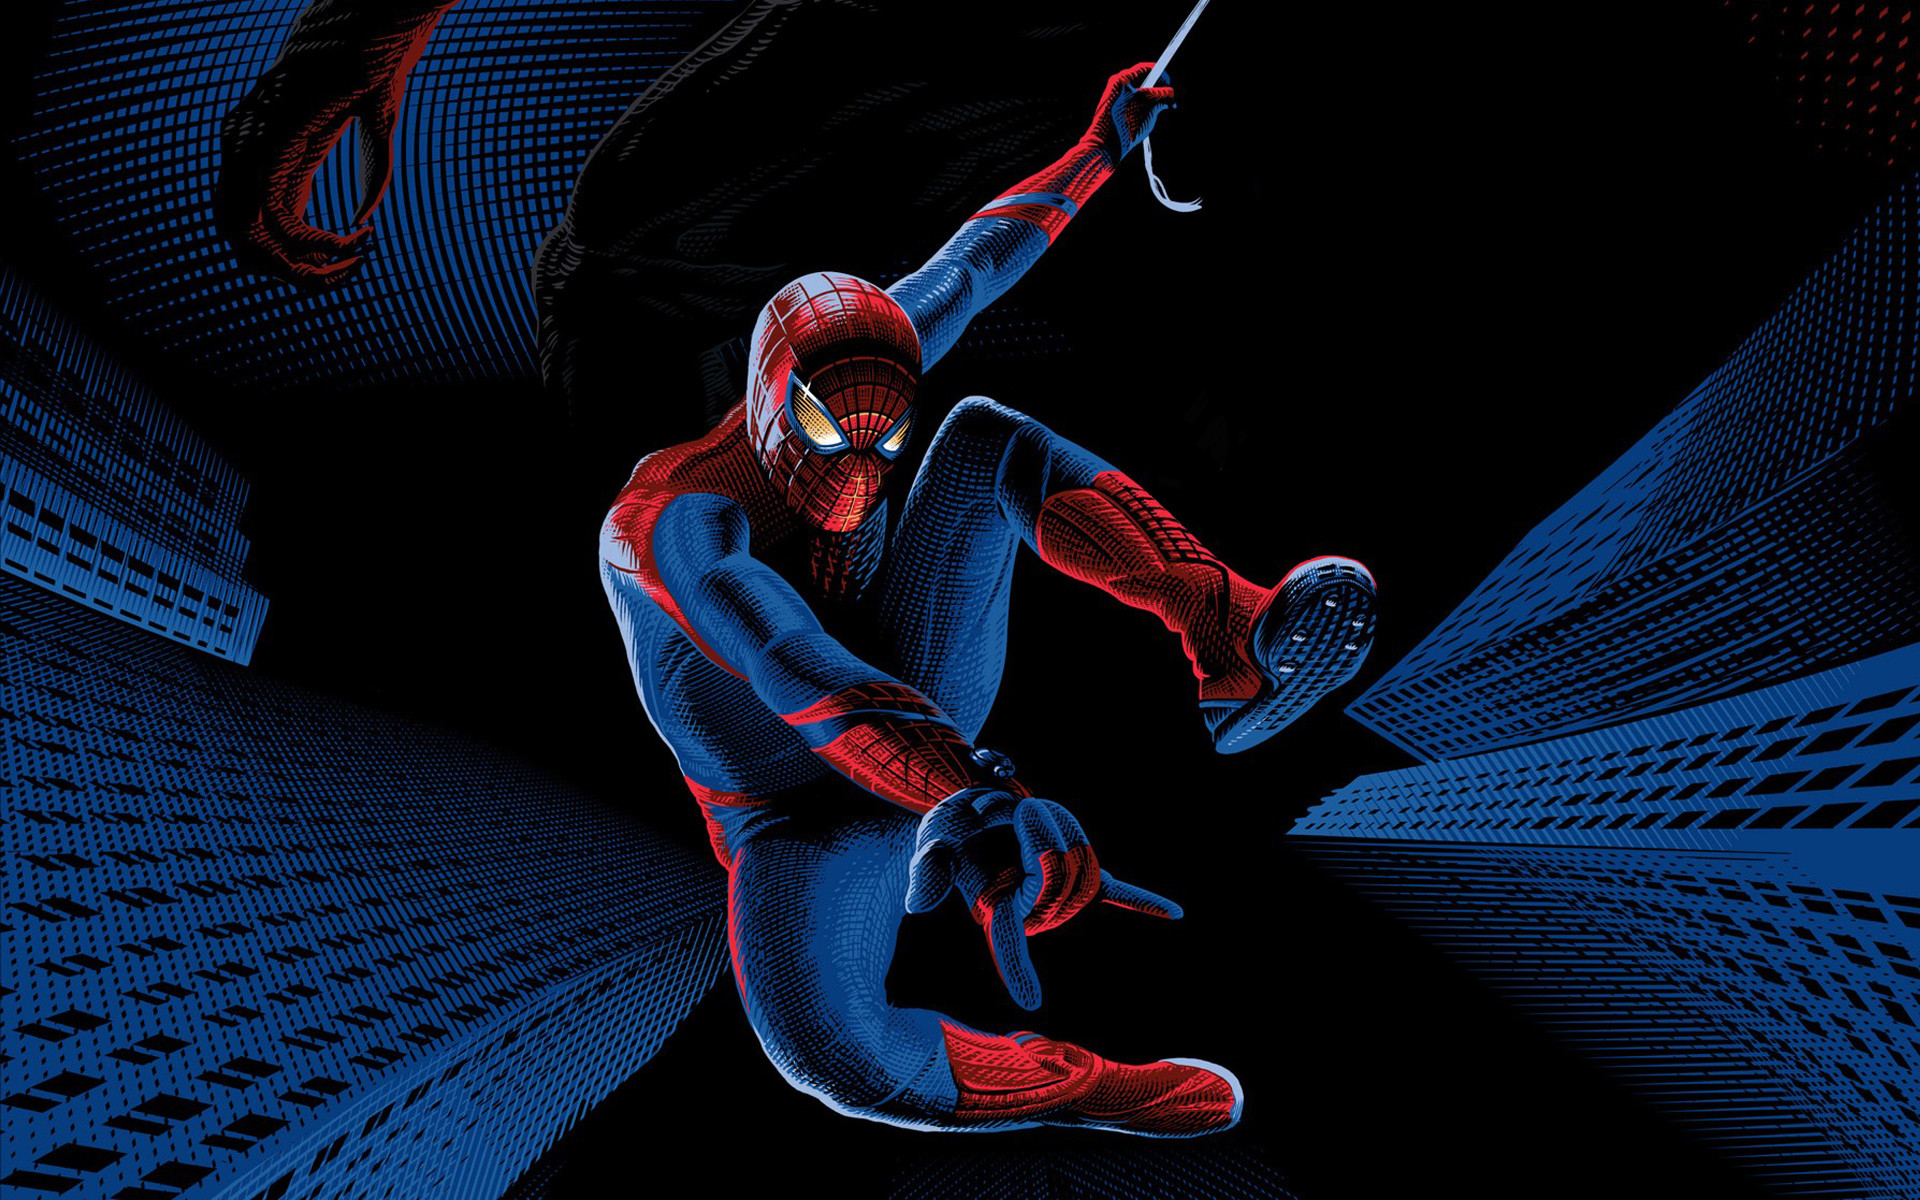 fond d'écran spiderman hd,homme araignée,super héros,personnage fictif,illustration